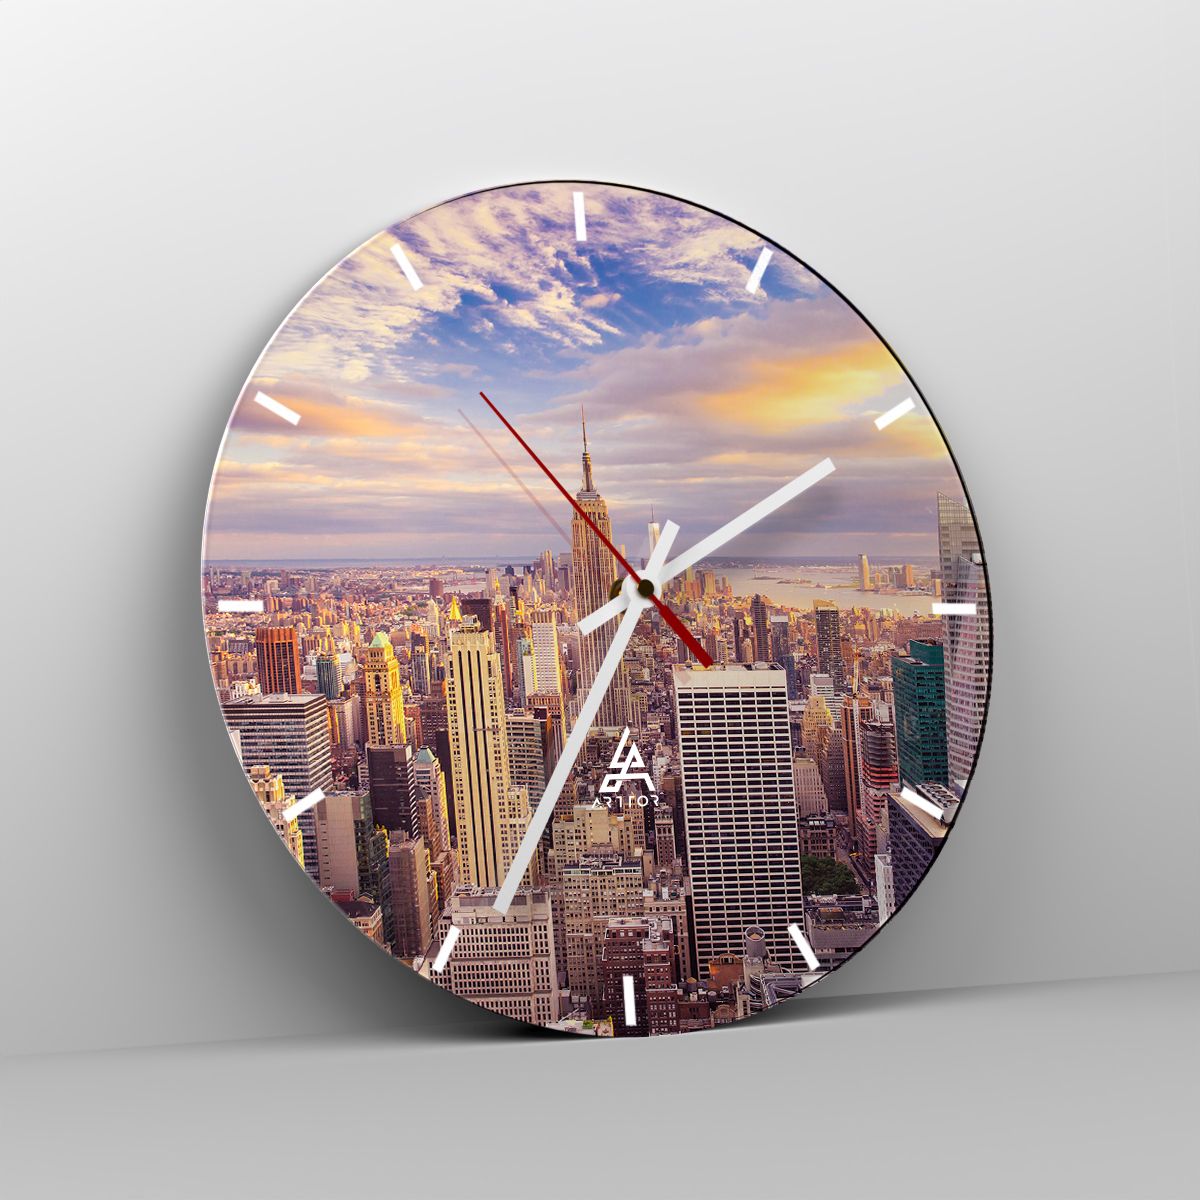 Orologio da parete Arttor - Toccando le nuvole - Quadrante con trattini,  Forma: Cerchio - 30x30 cm - Città, New York, Architettura